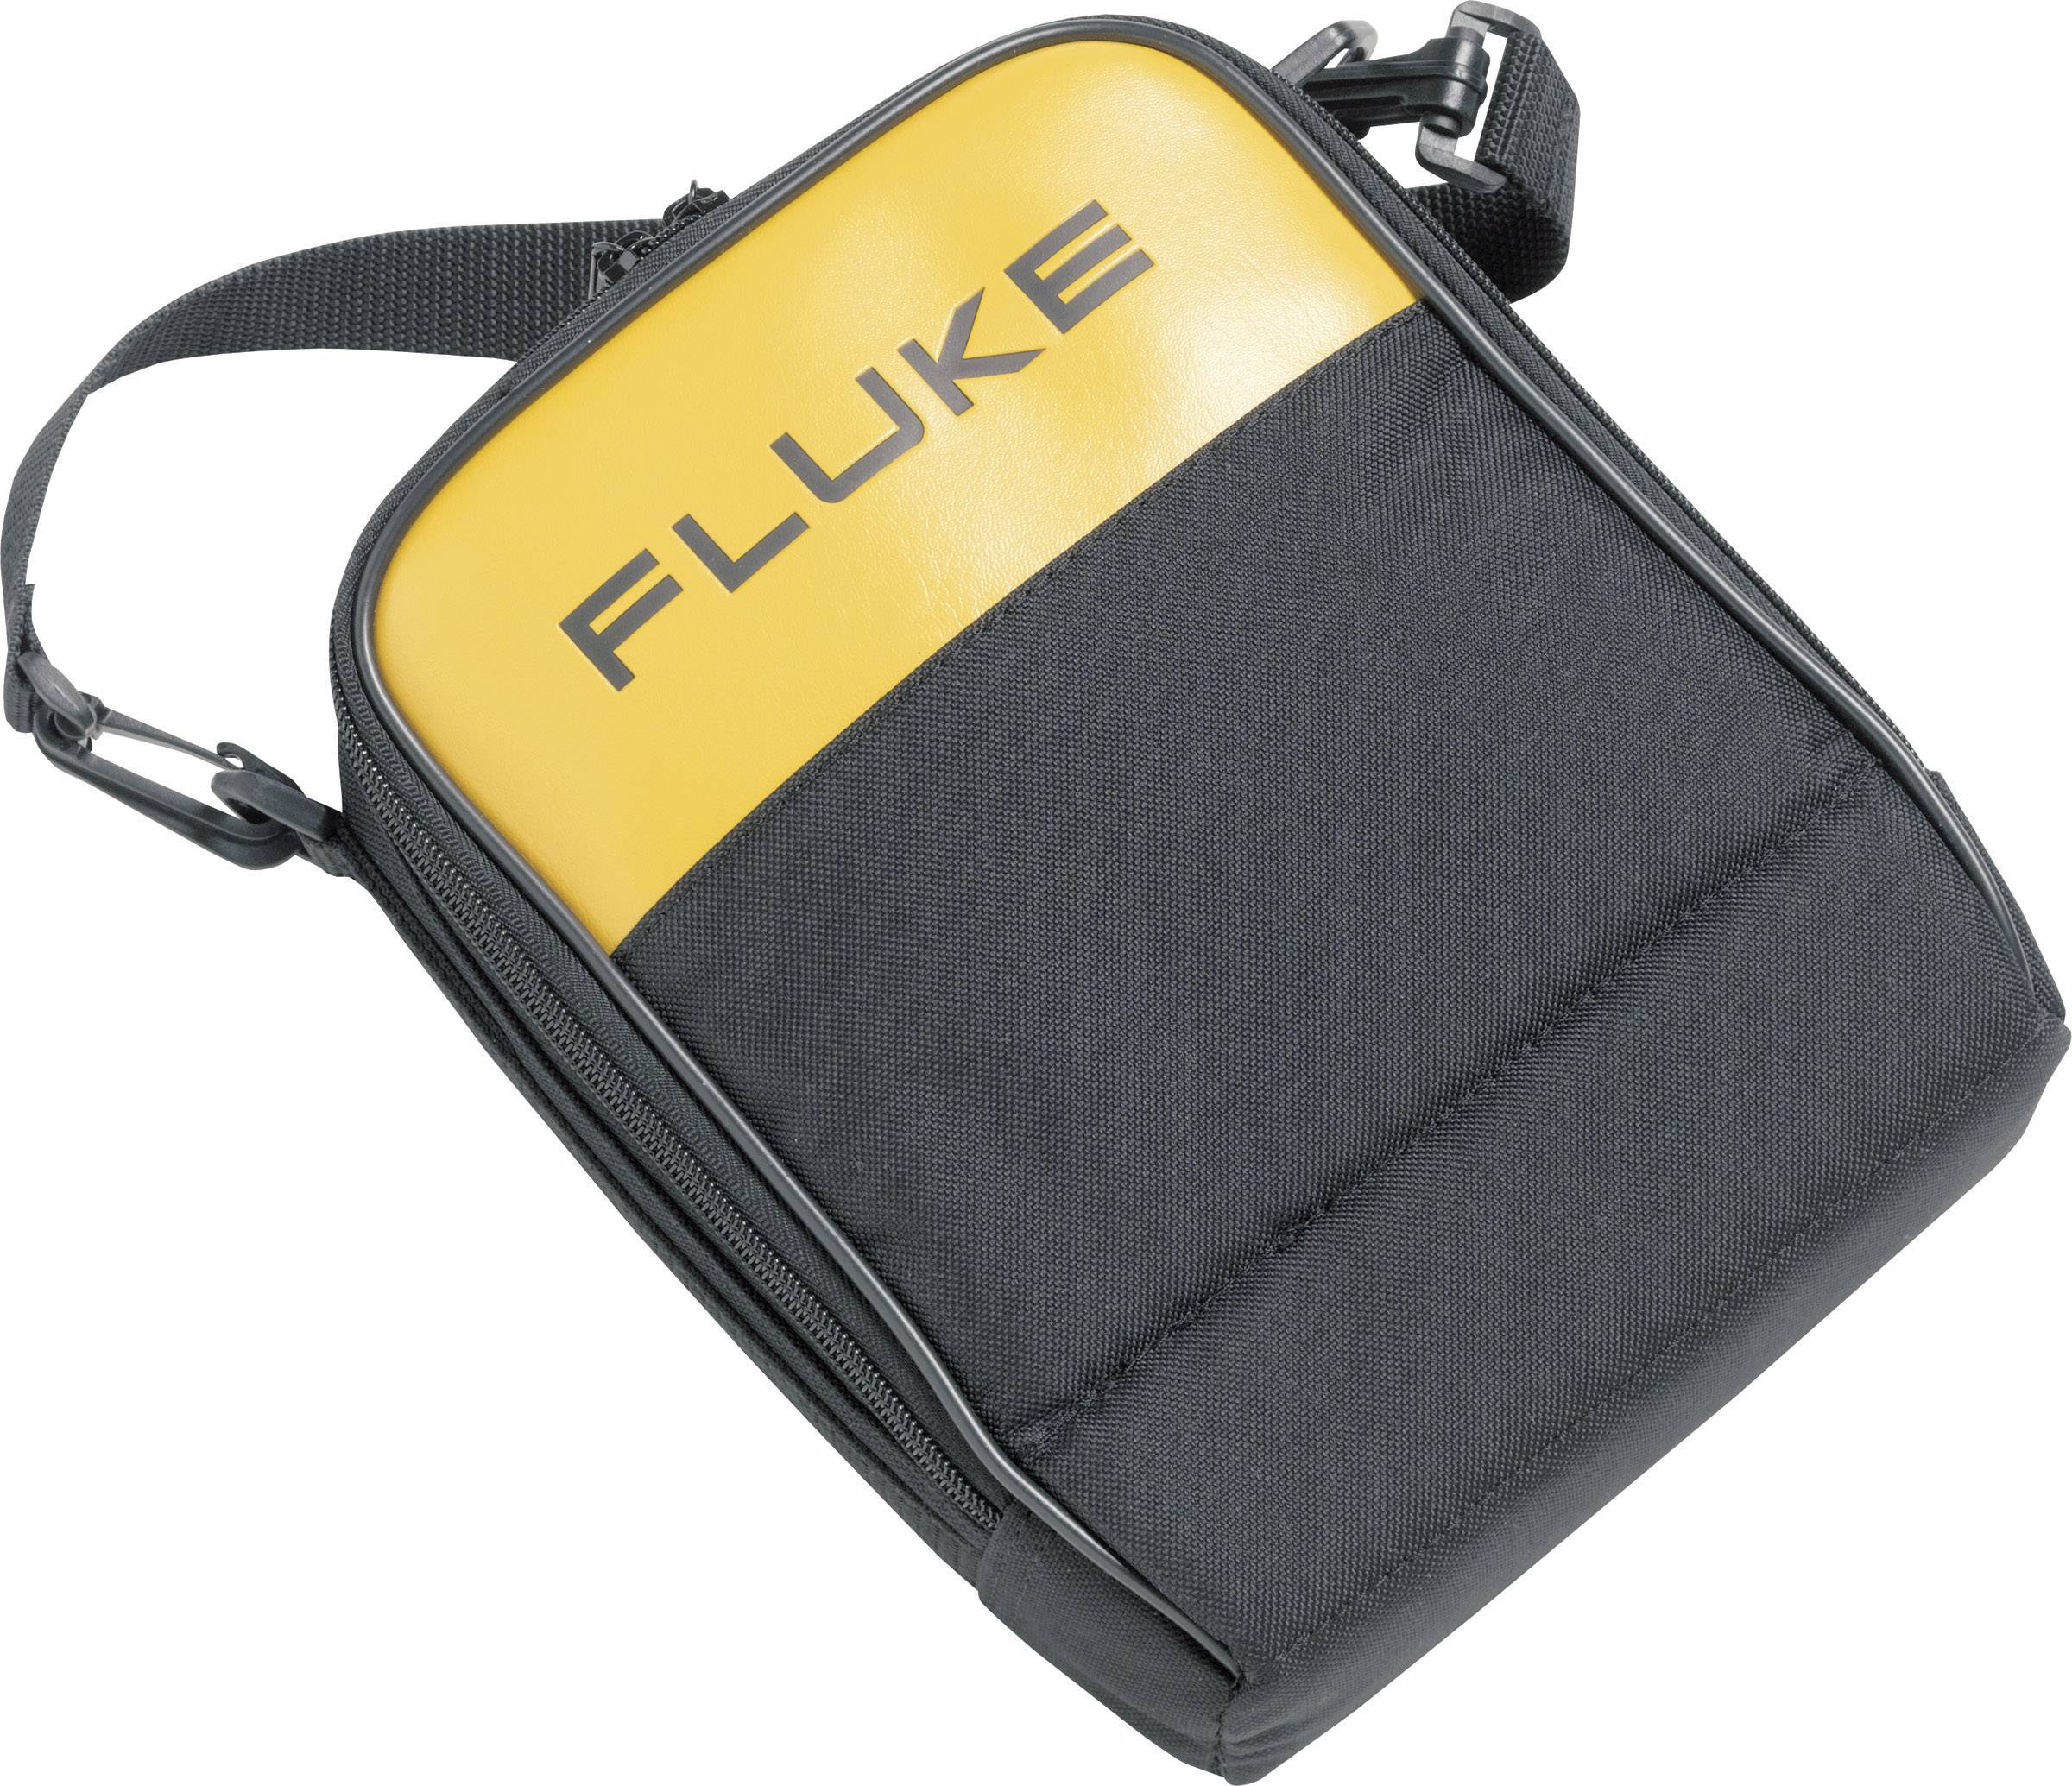 FLUKE C115 Messgeräte-Tasche, Etui Passend für DMM Fluke Serien 11x, 20, 70, 80, 170 und anderen M